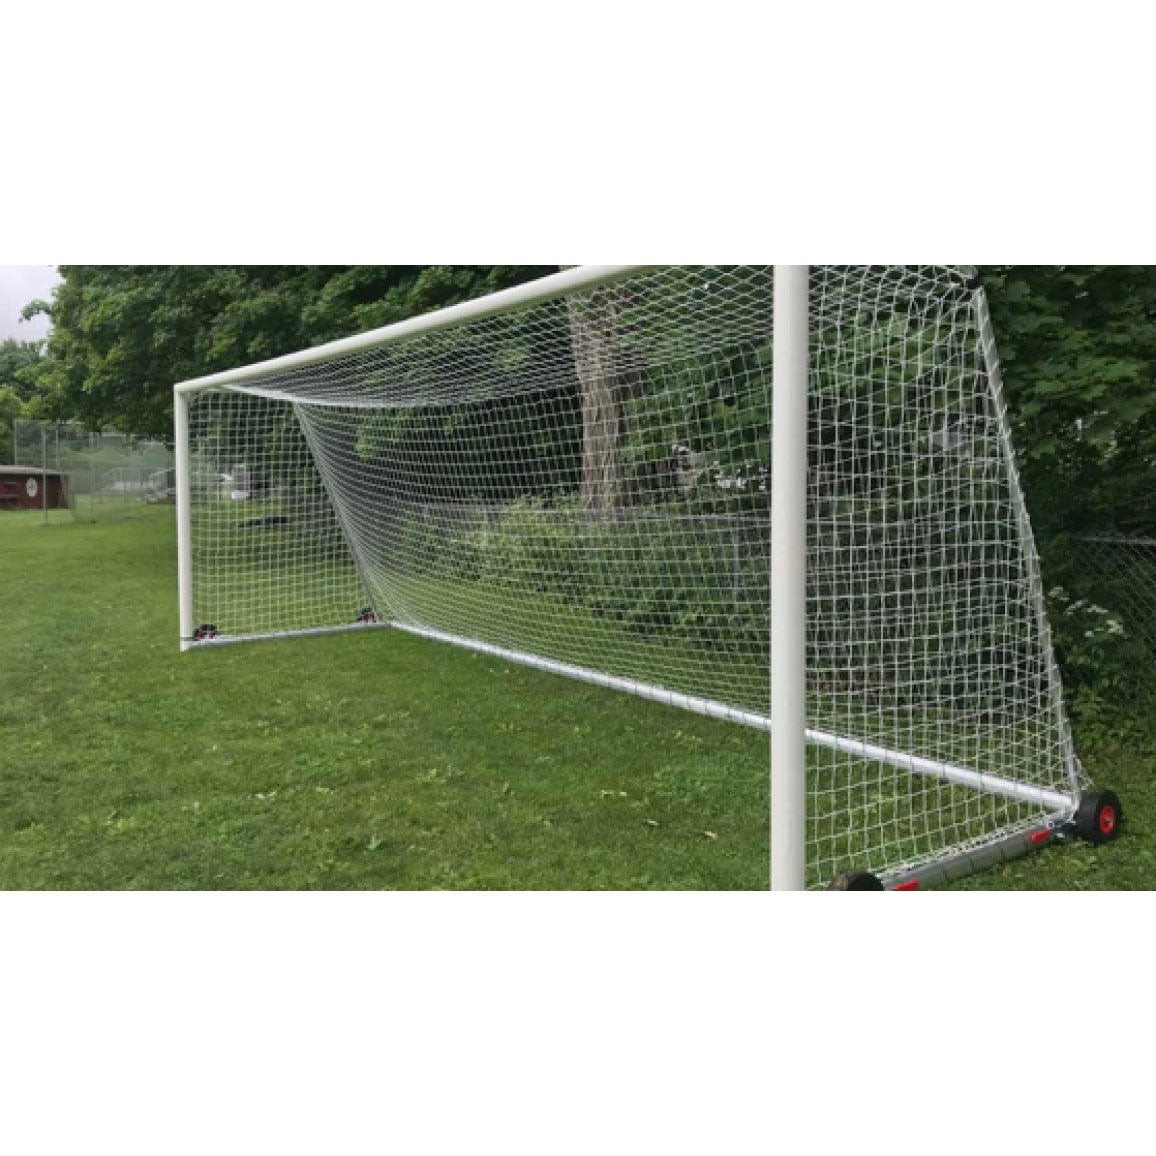 Portable Safegoals Soccer Goal